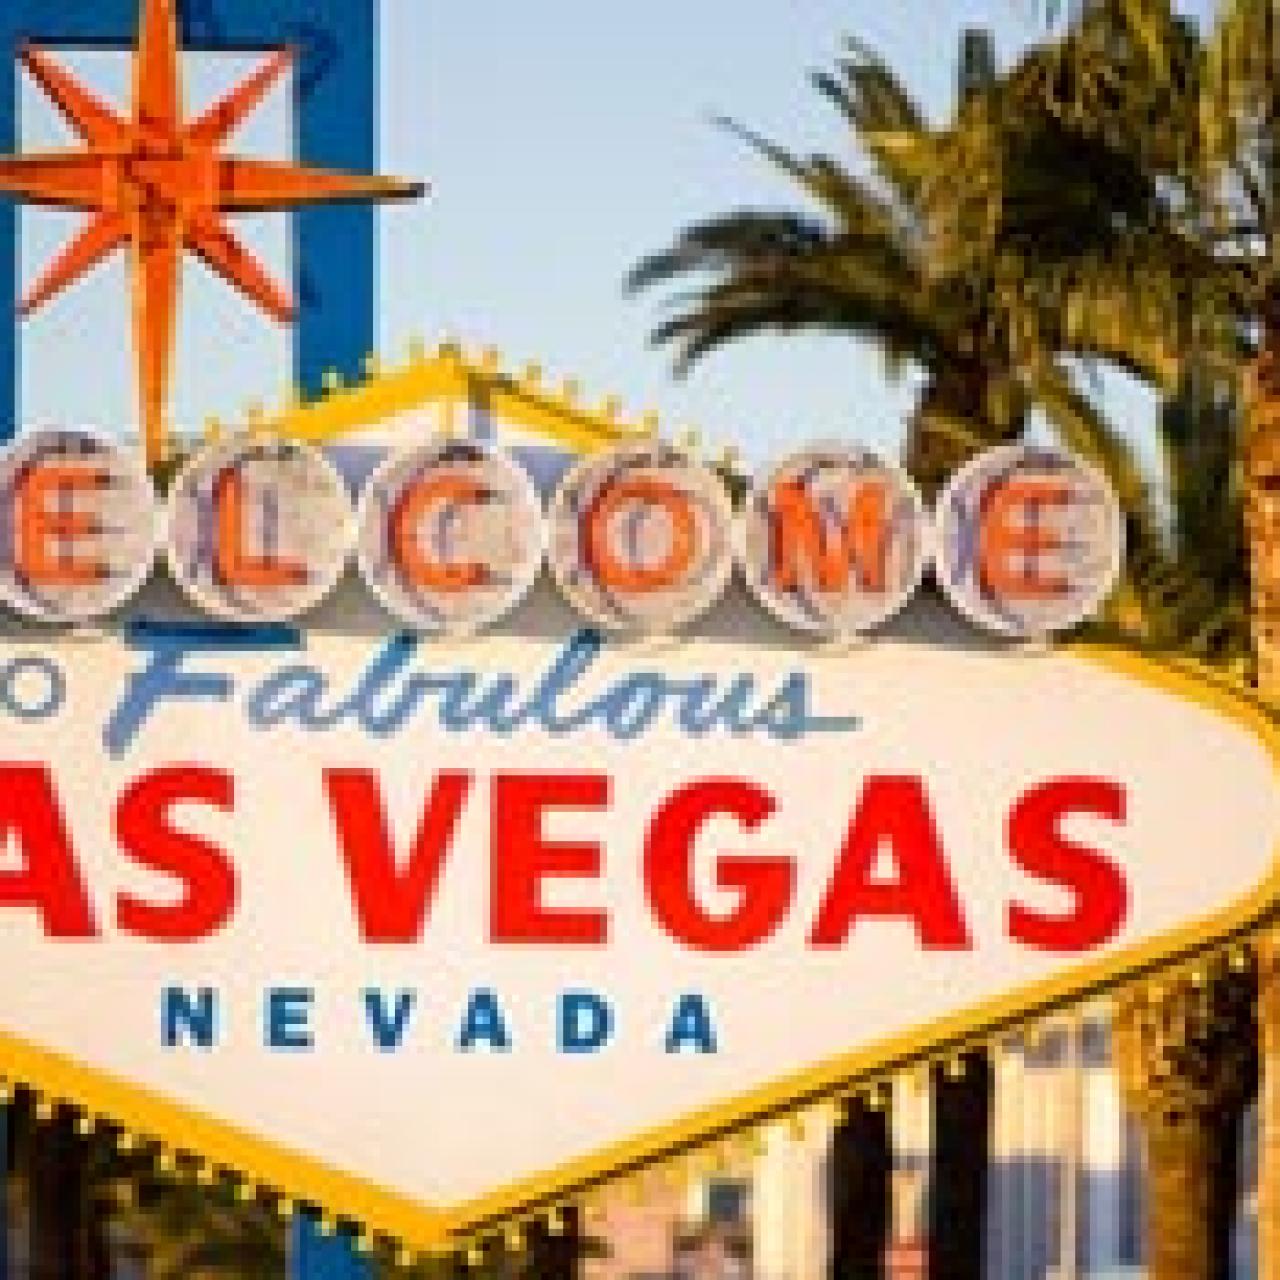 Welcome to Las Vegas Sign - Weird California